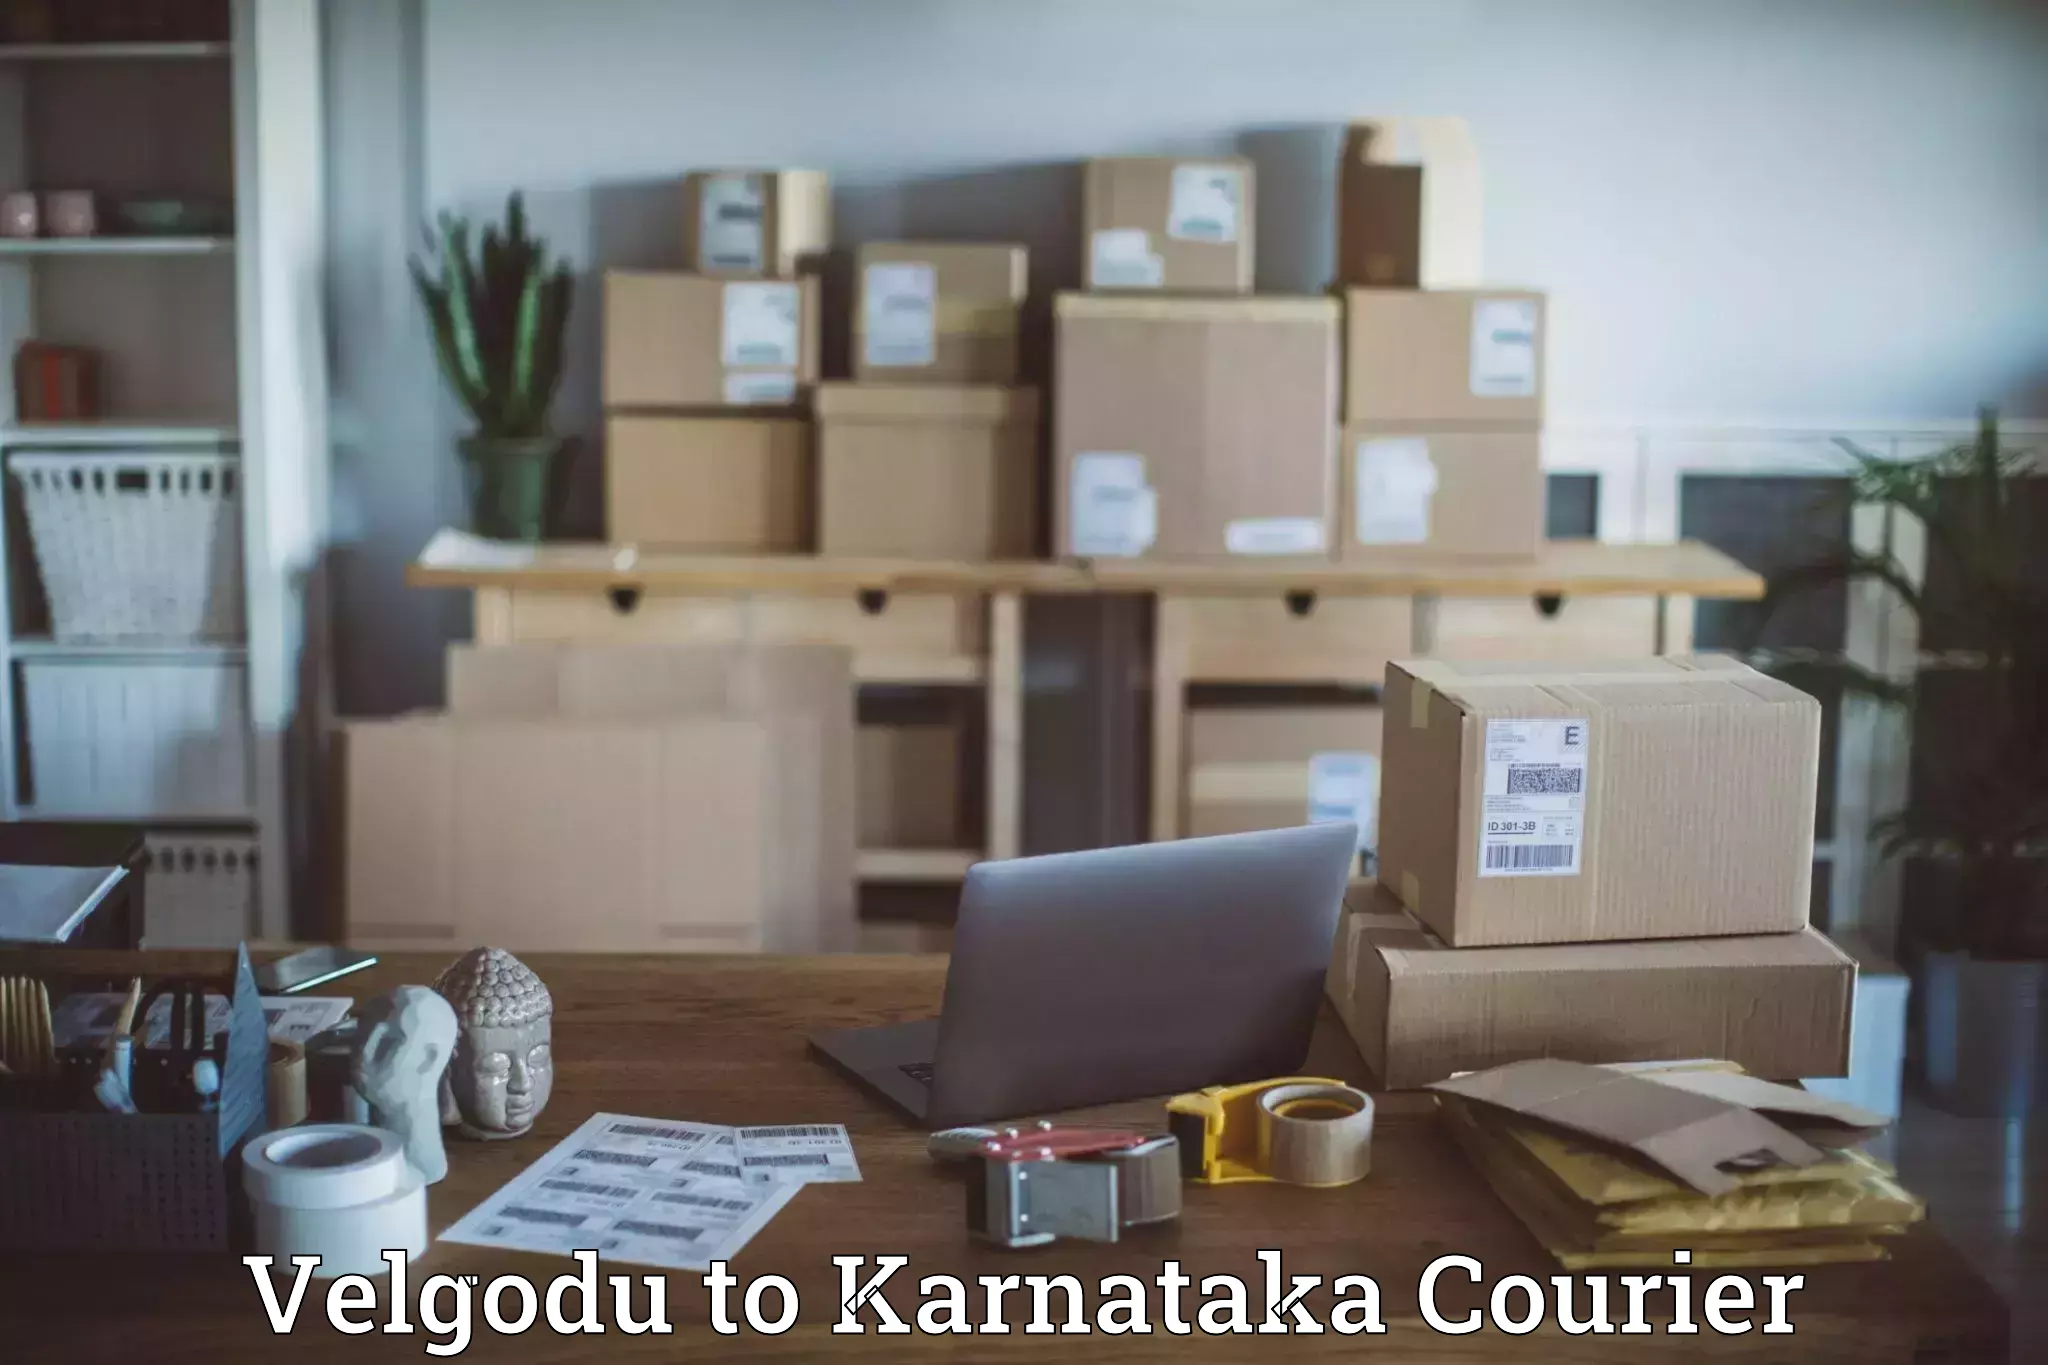 Bulk courier orders Velgodu to Mangalore Port